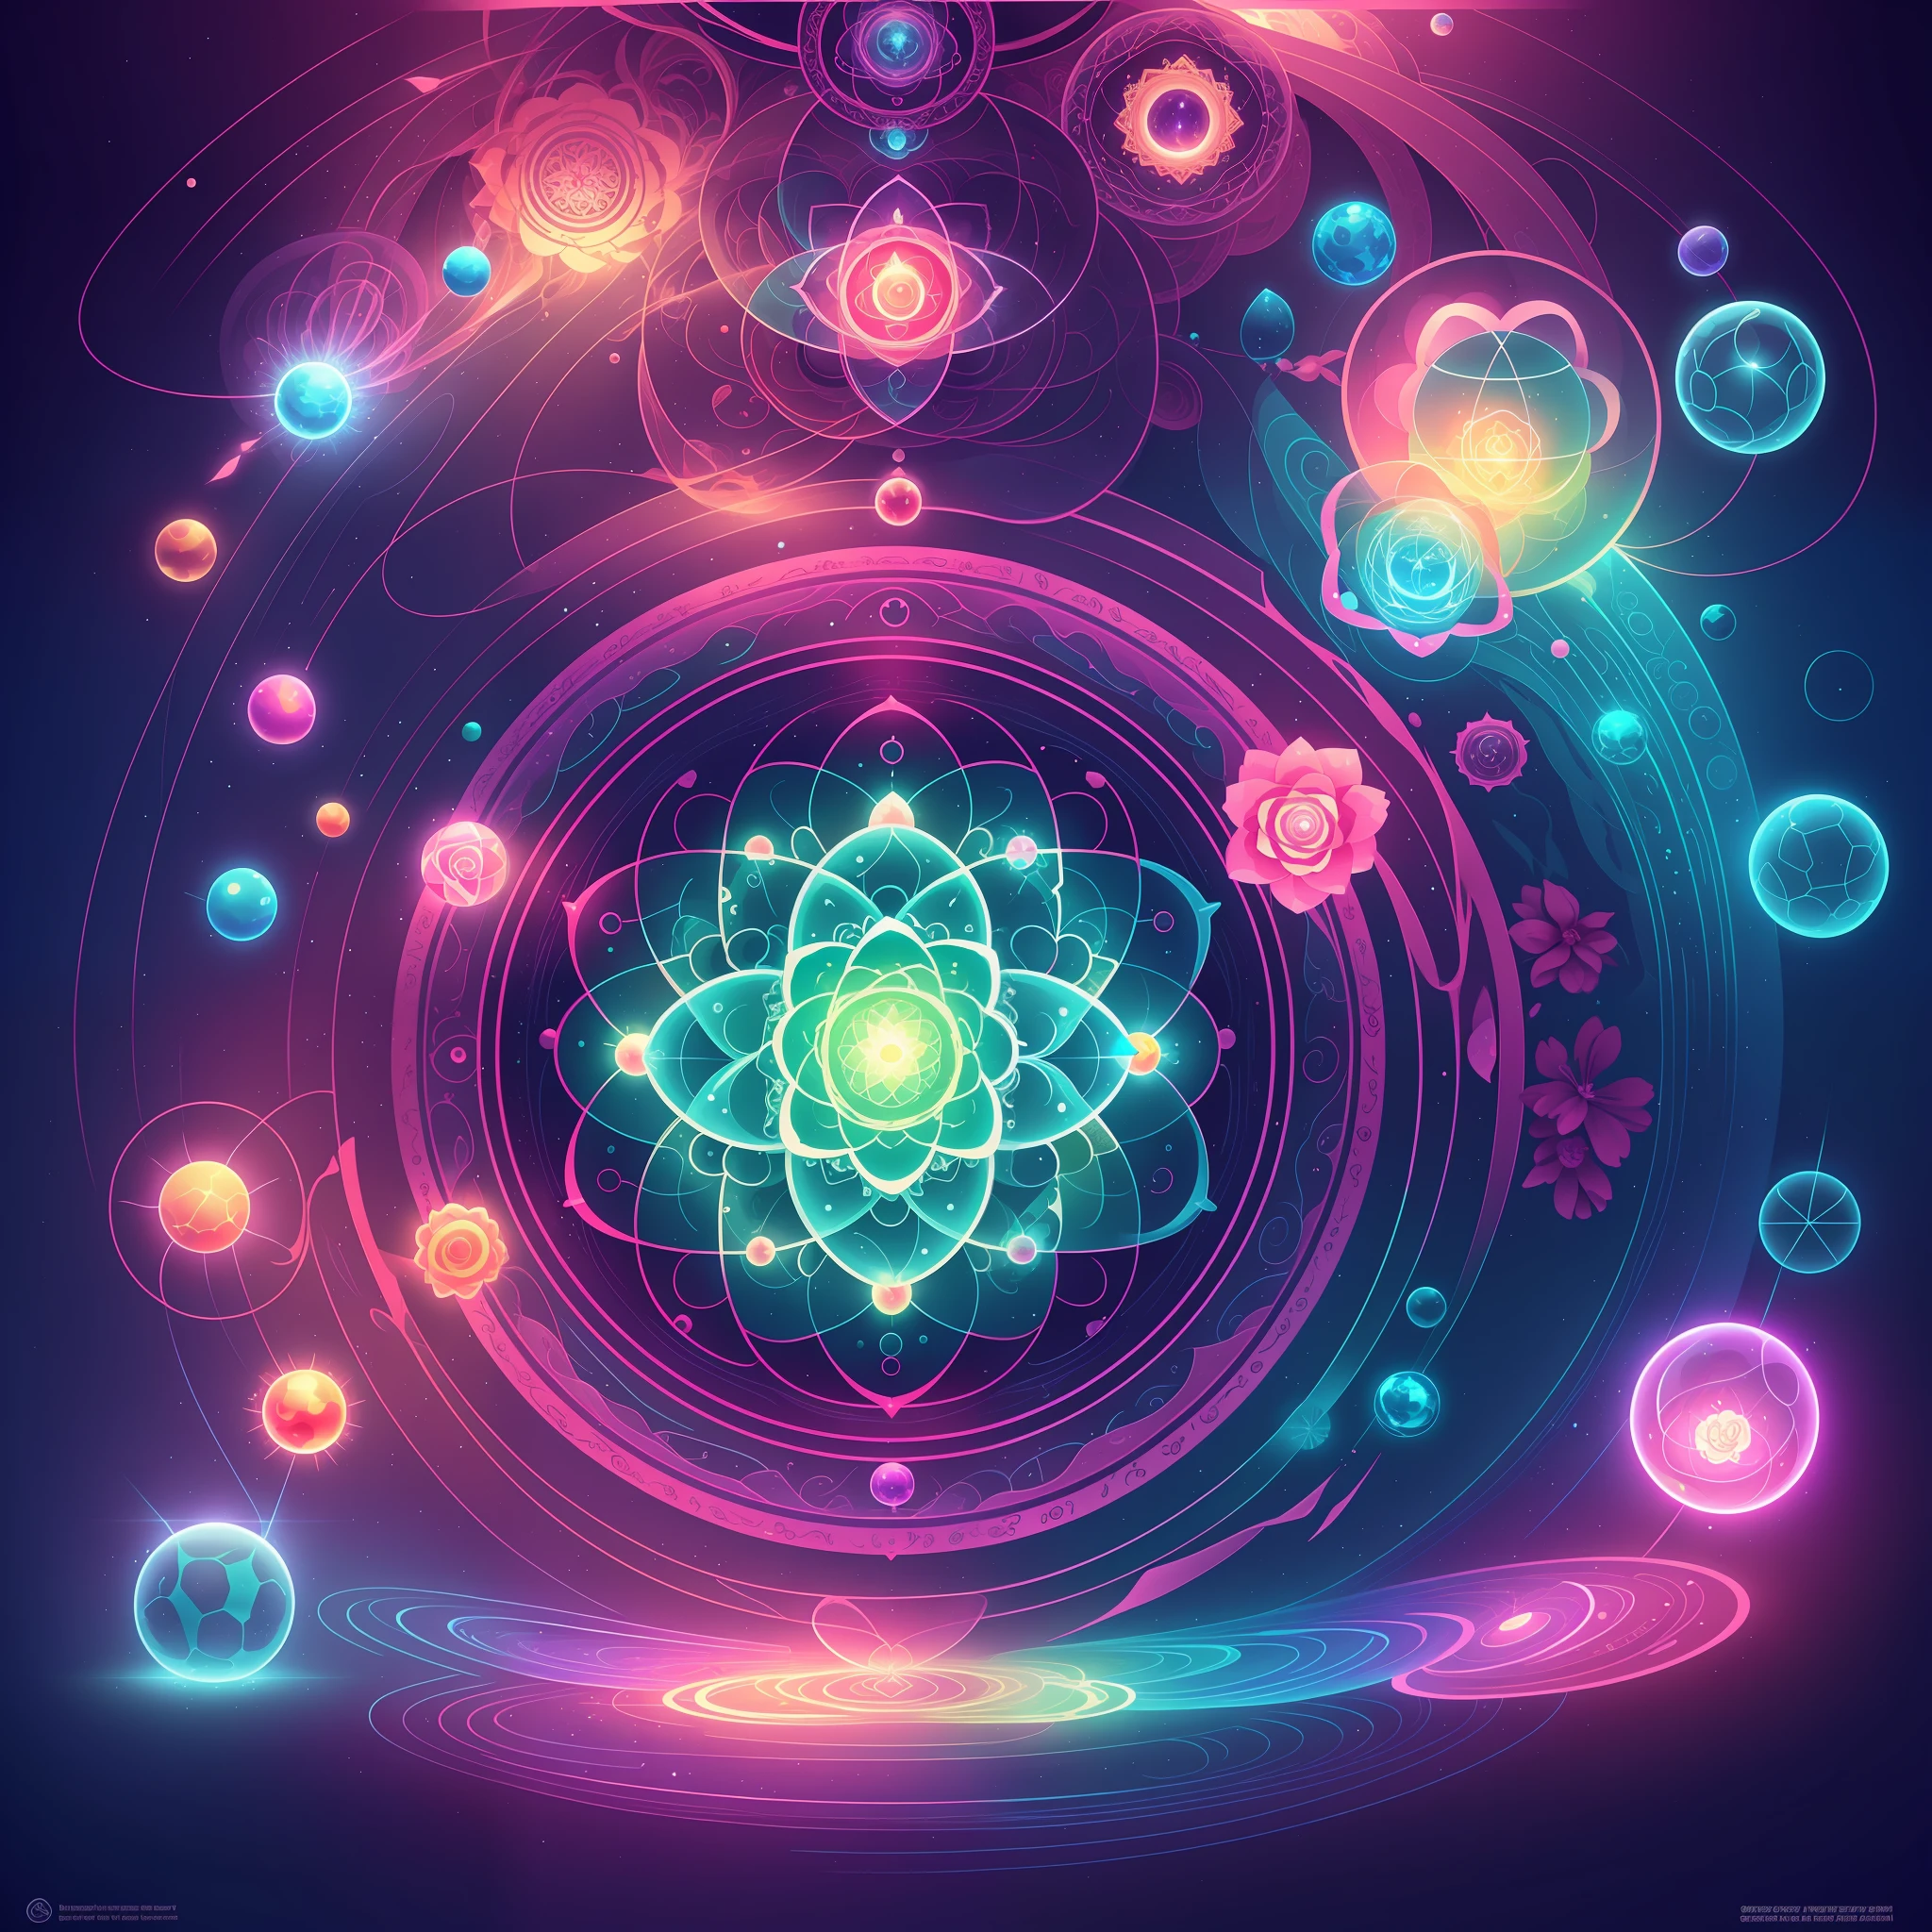 крупный план стакана с цветком внутри, ядро, атом, энергия тора, цифровая иллюстрация, Акаша, алхимическийal, энергетическая сфера, квантовый deep magic, квантовый, Любая чакра, энергетическое ядро, священные фрактальные структуры, алхимическийal still, алхимический, светящаяся туманность, в пределах излучающего соединения, плавление сакральной геометрии --auto --s2